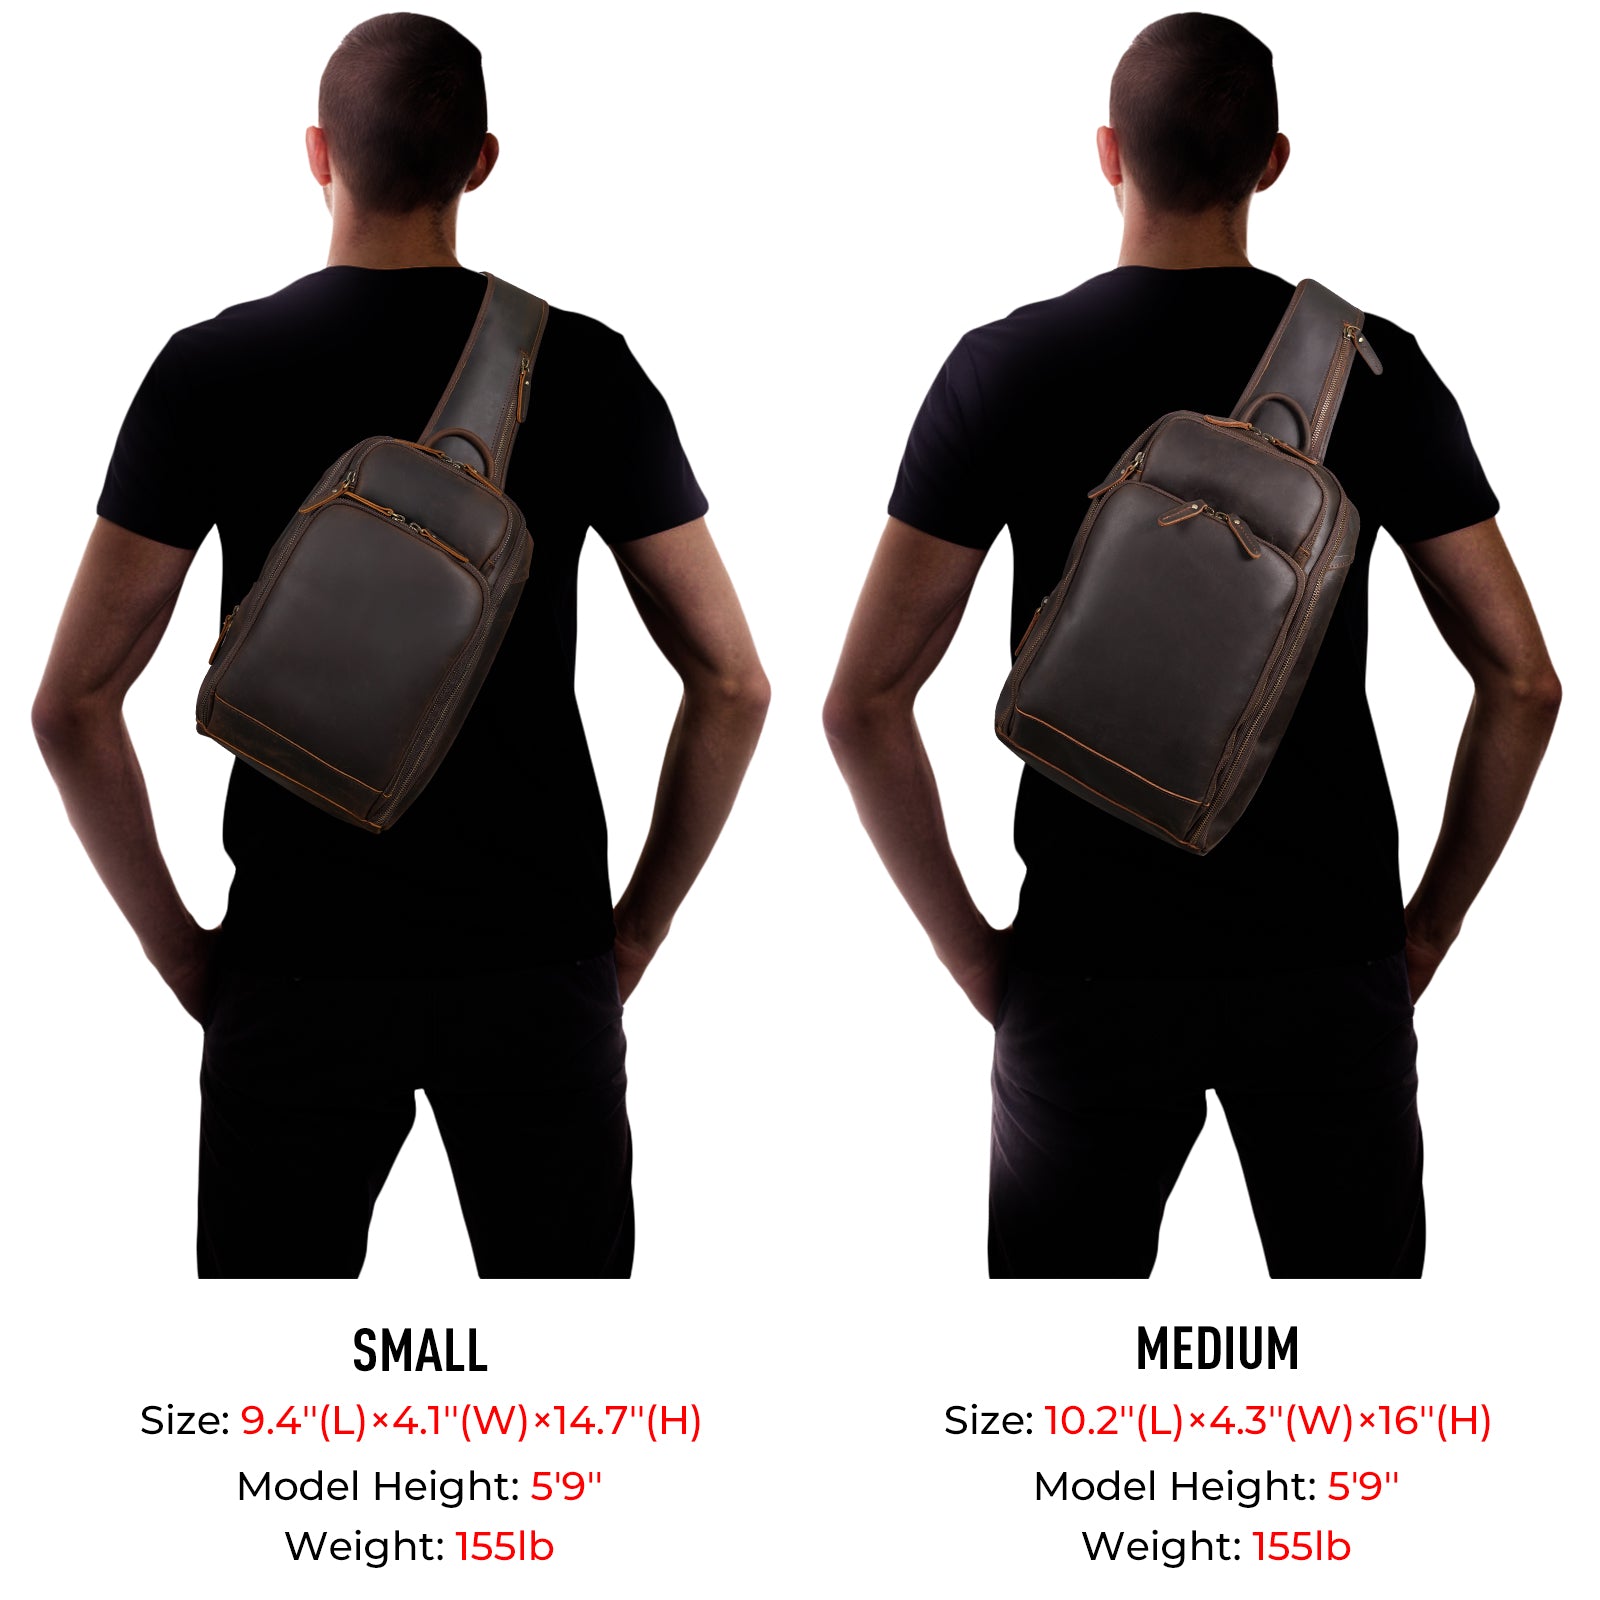 marcG Faux Leather Stylish Shoulder Side Sling Bag for Women(Multi color)